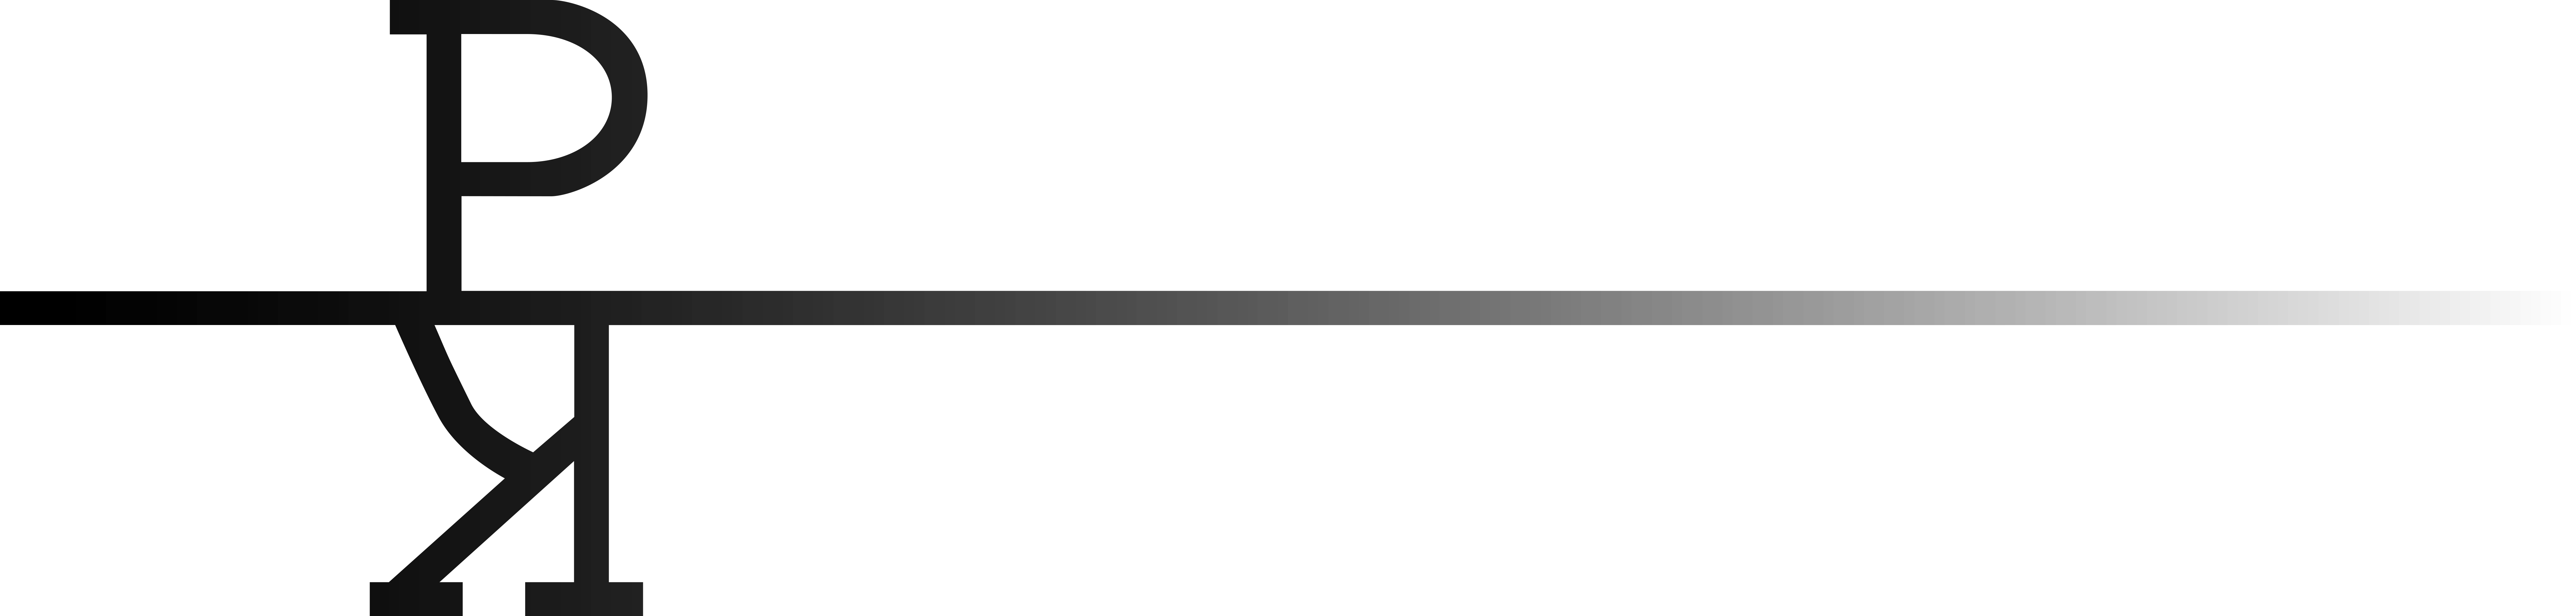 Logo des Kunstpavillon München - die Buchstaben K und P kombiniert mit einer Mittellinie